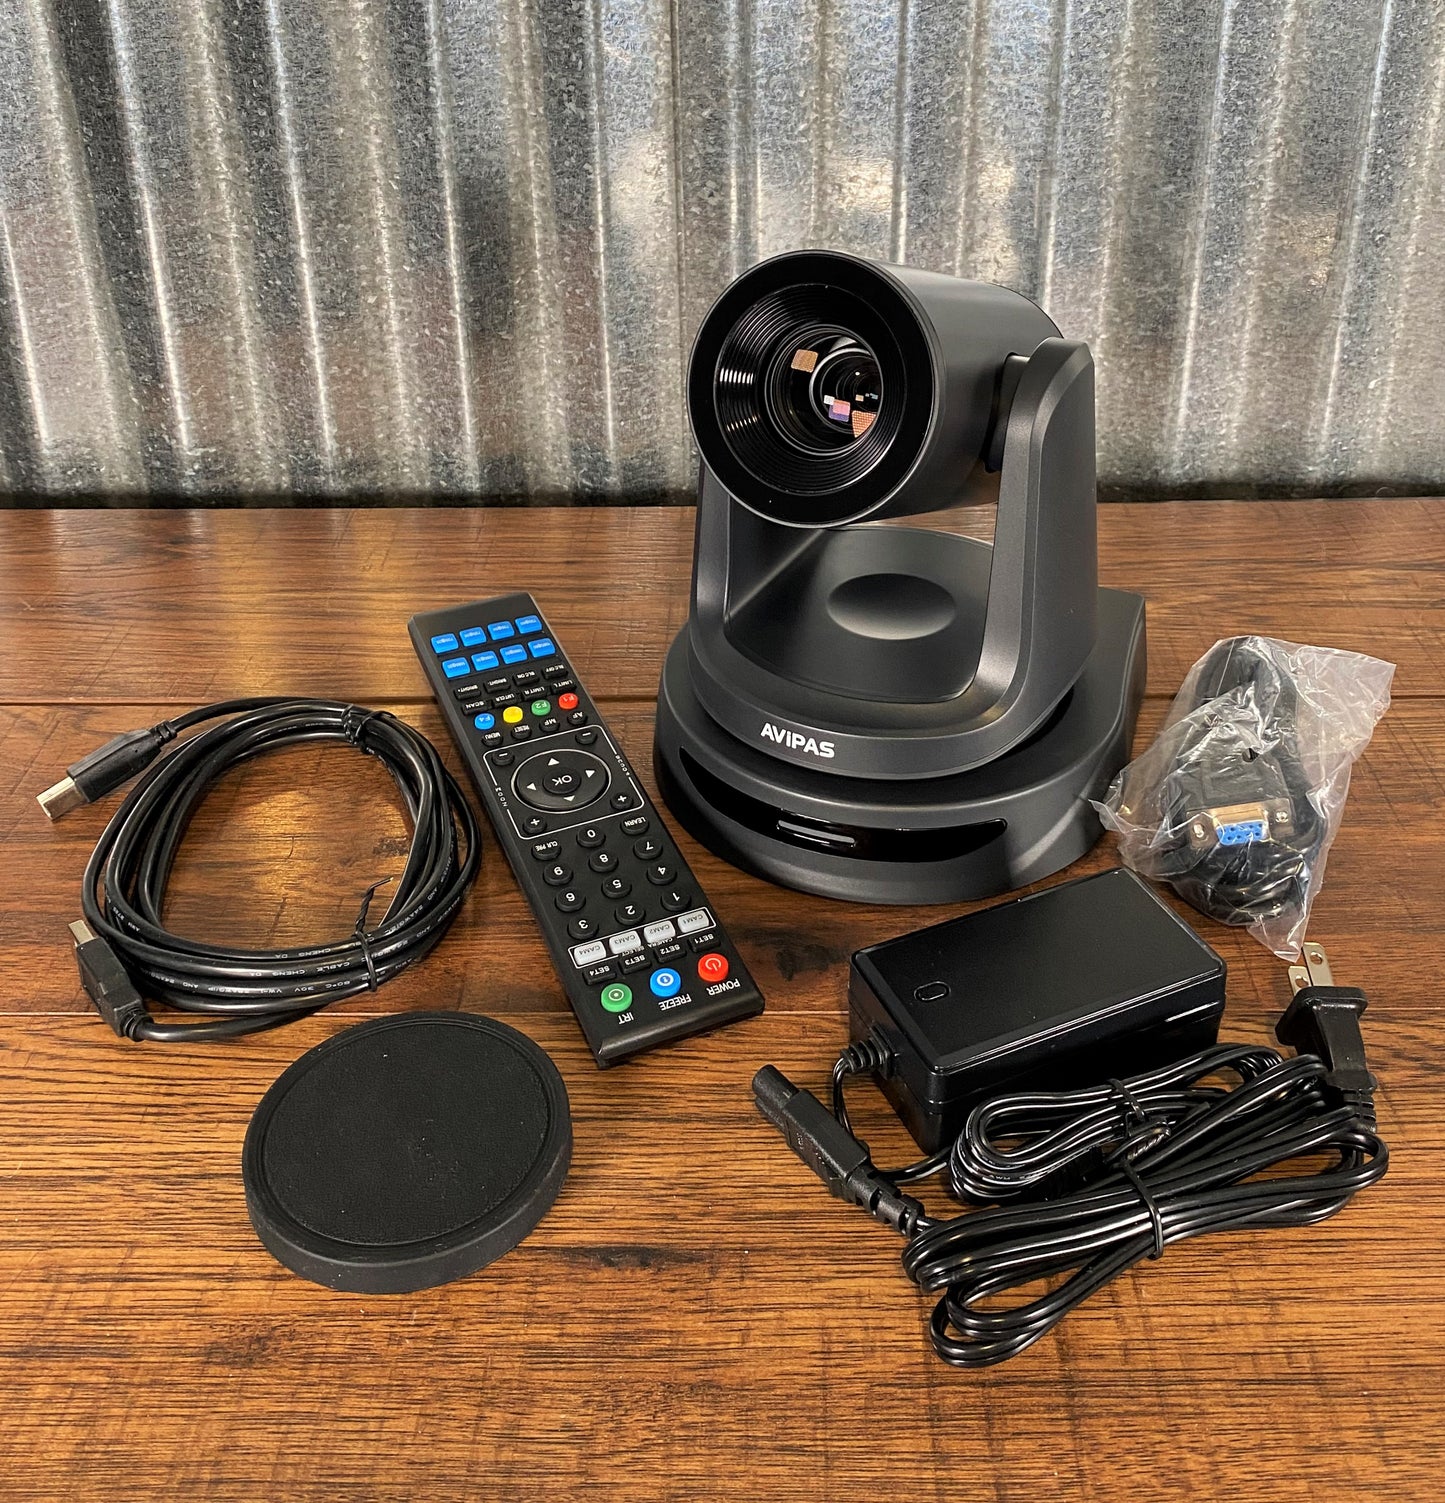 Roland PTZ-1G-V02 Single PTZ Camera & Mixer Video Streaming Bundled Solution Grey V-02HD AV-2020G